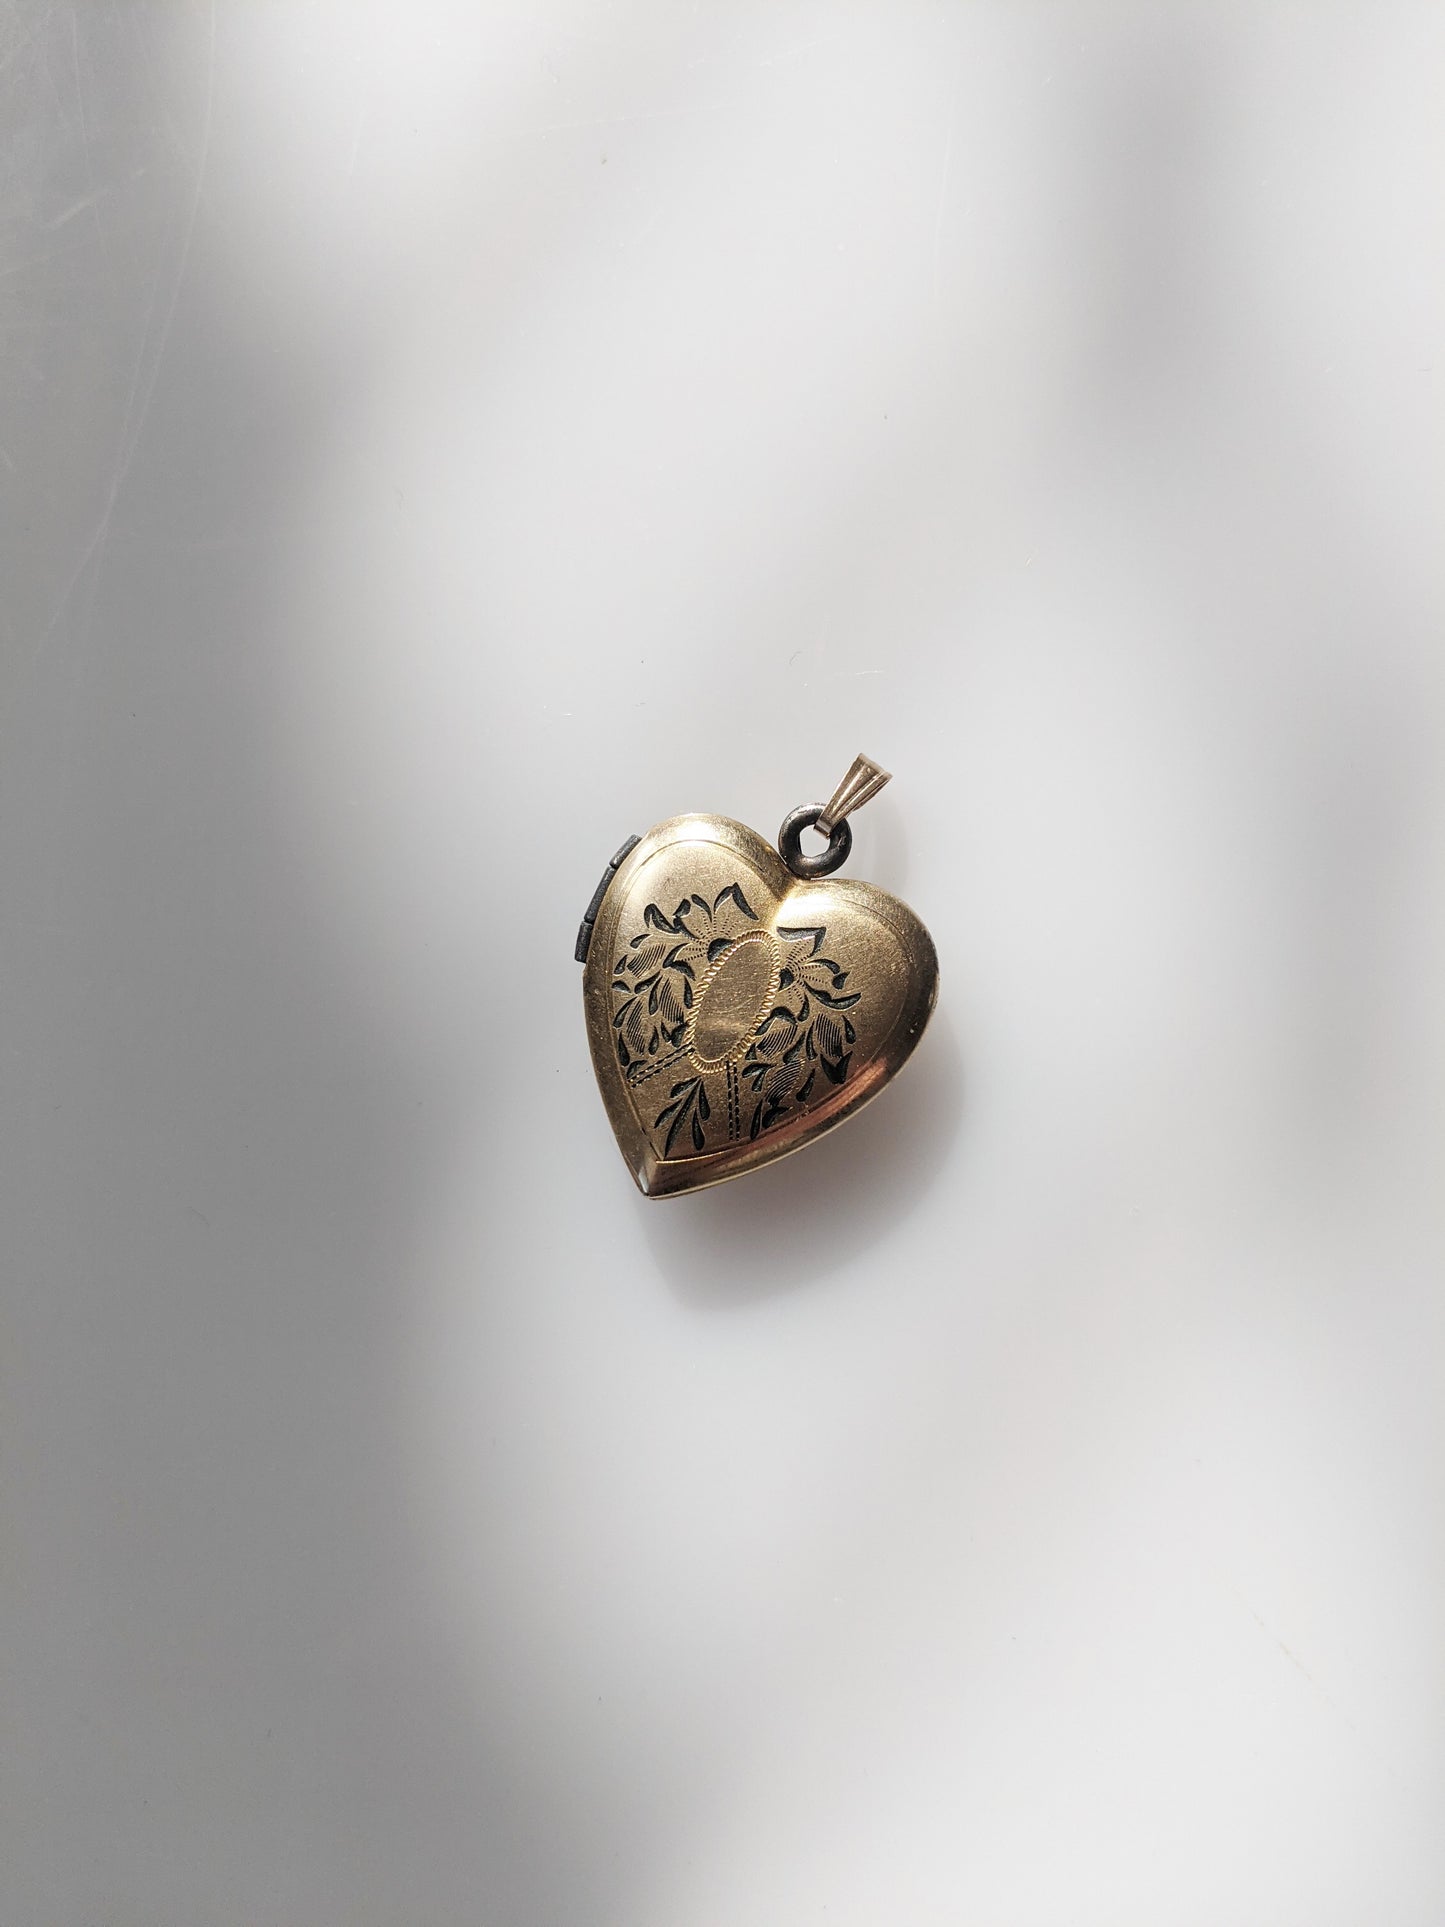 Antique 12kt Gold Heart-Shaped Locket | Enameled Engraving